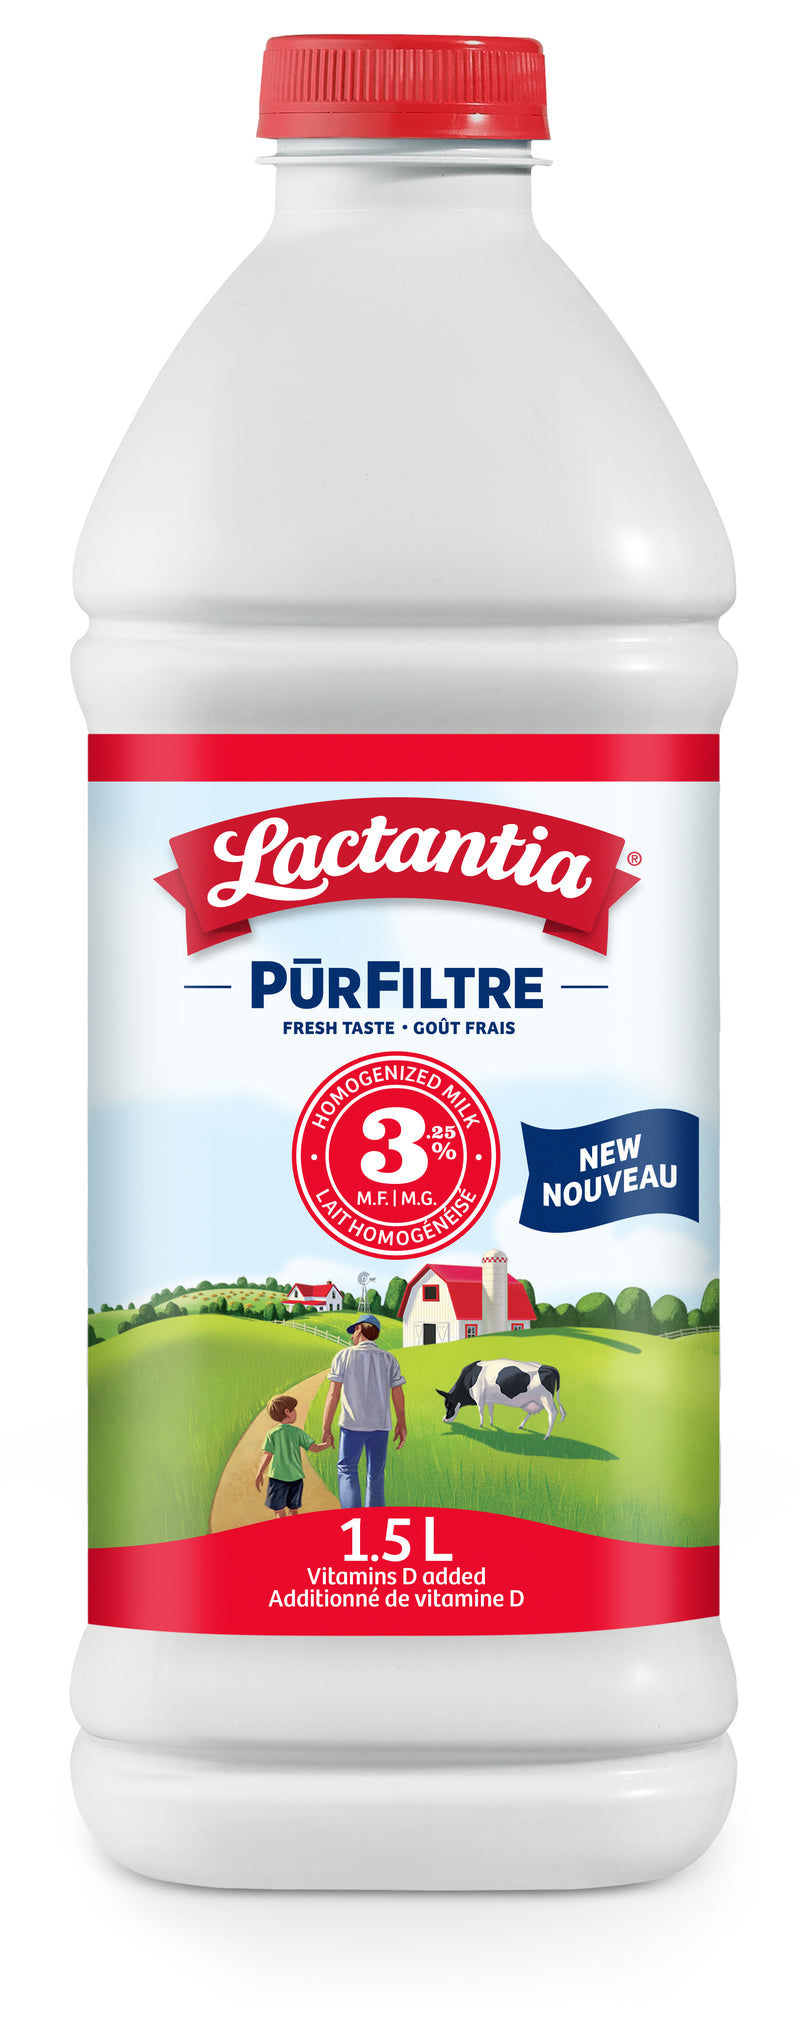 Lactantia 3.8% Pur Filter Milk - 1.5 L